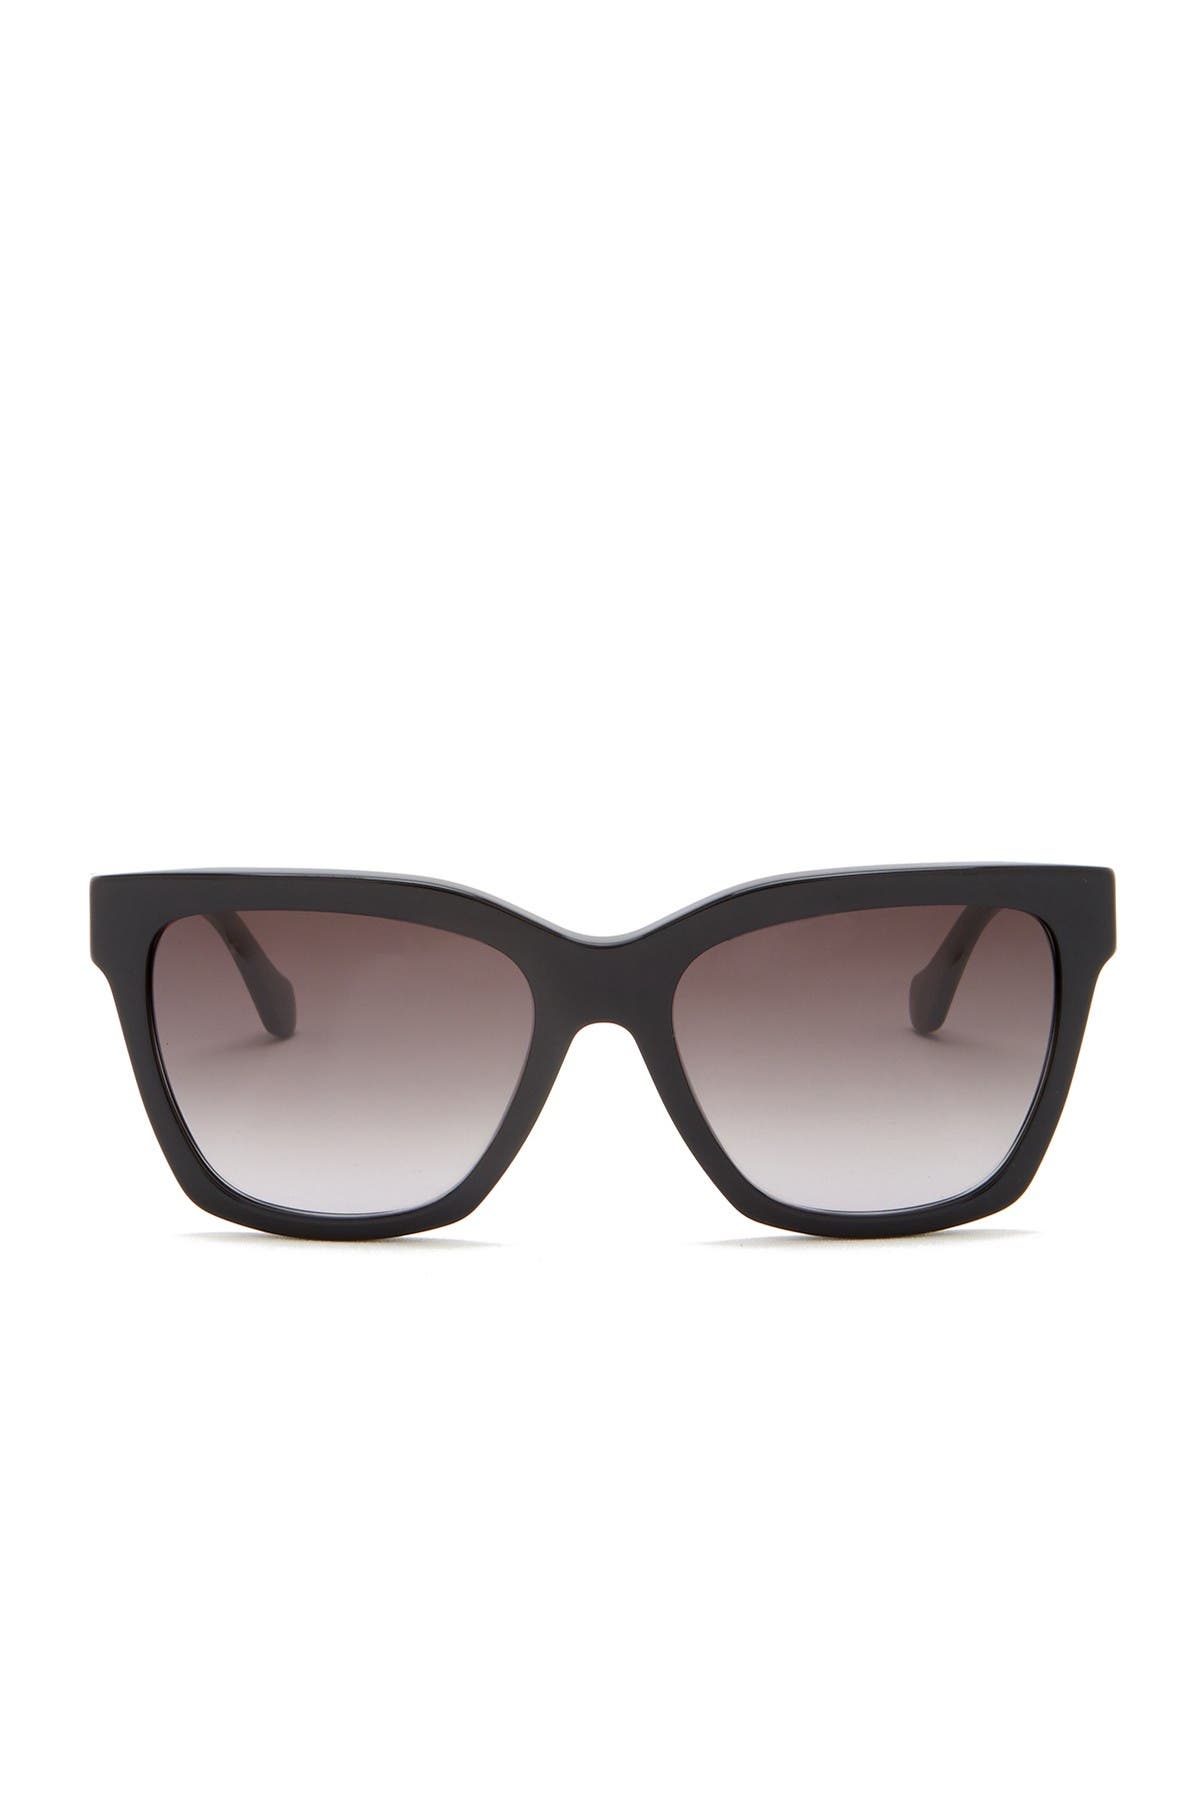 Balenciaga | 55mm Square Sunglasses 